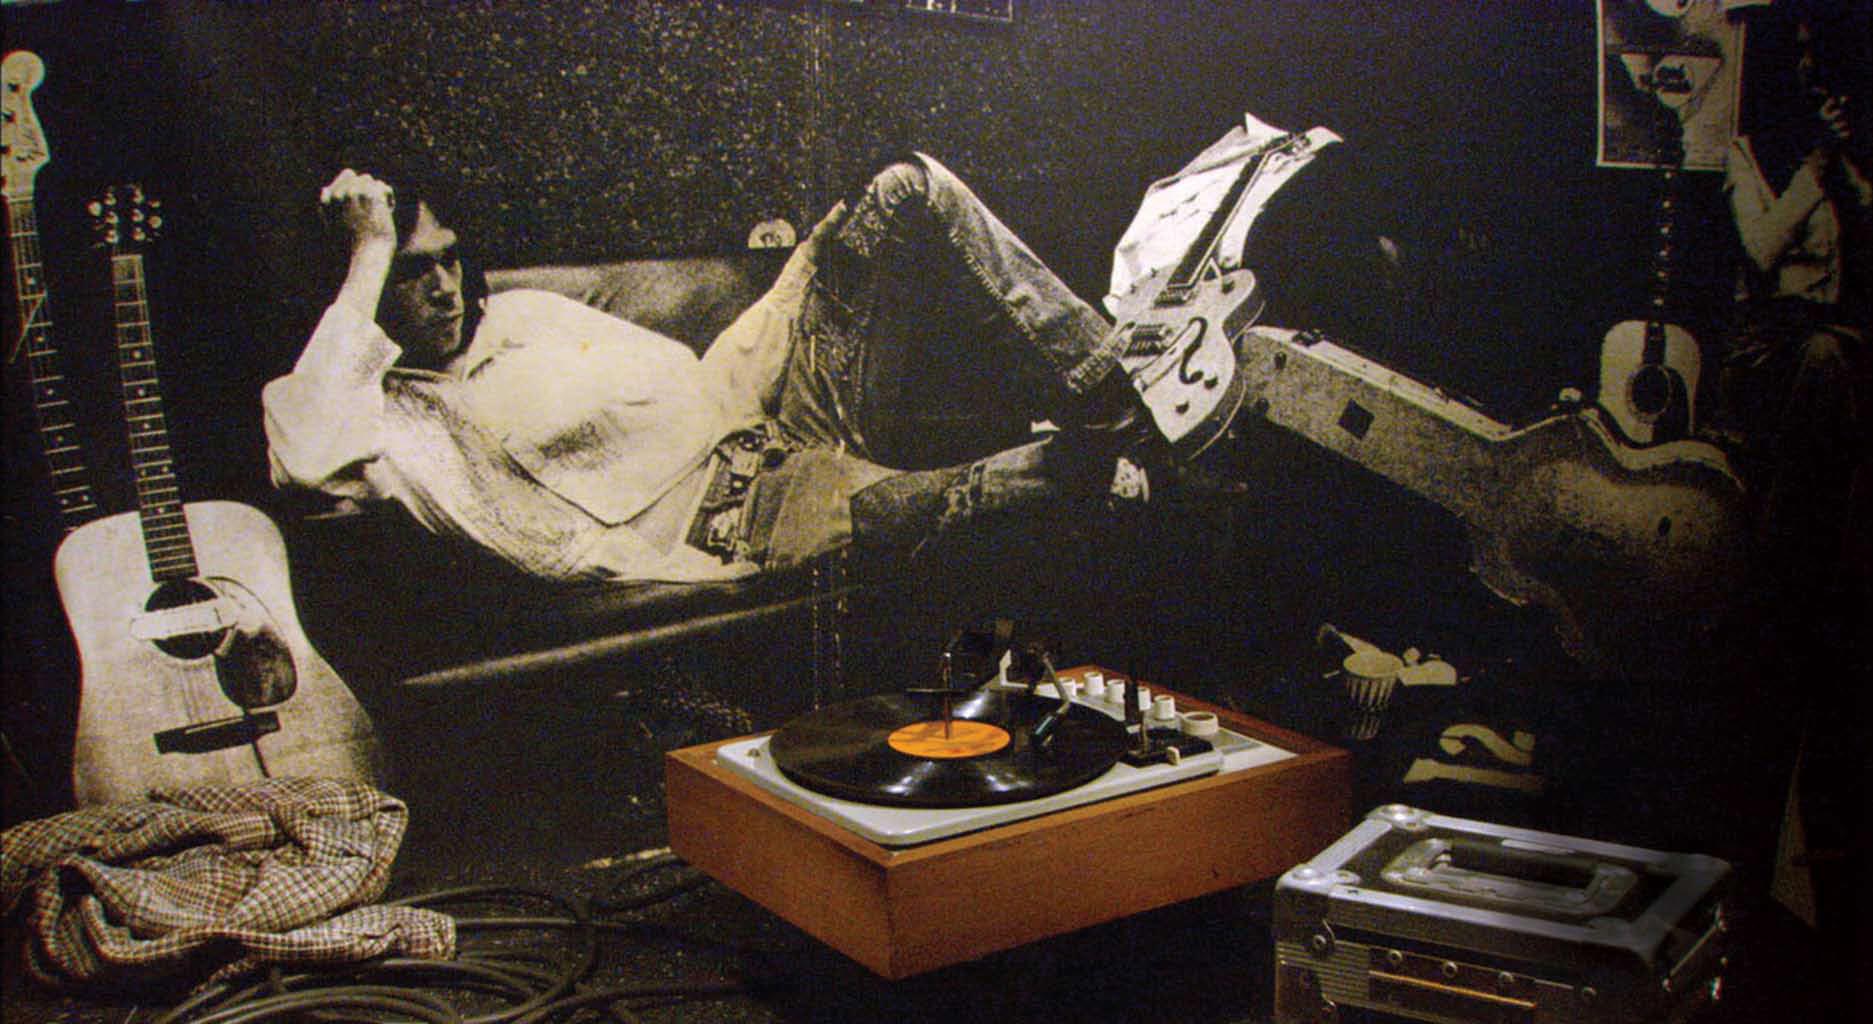 Fotografía de Neil Young en su juventud.